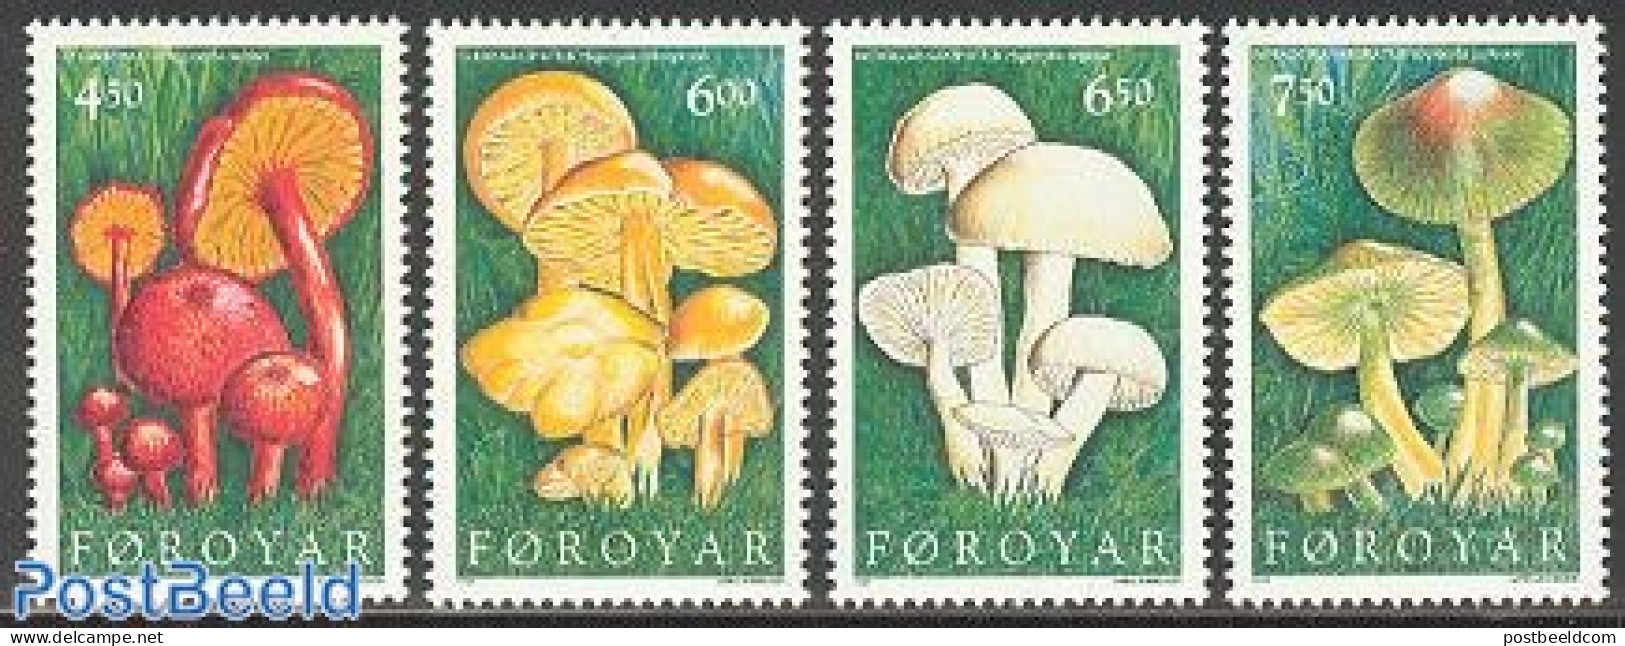 Faroe Islands 1997 Mushrooms 4v, Mint NH, Nature - Mushrooms - Mushrooms